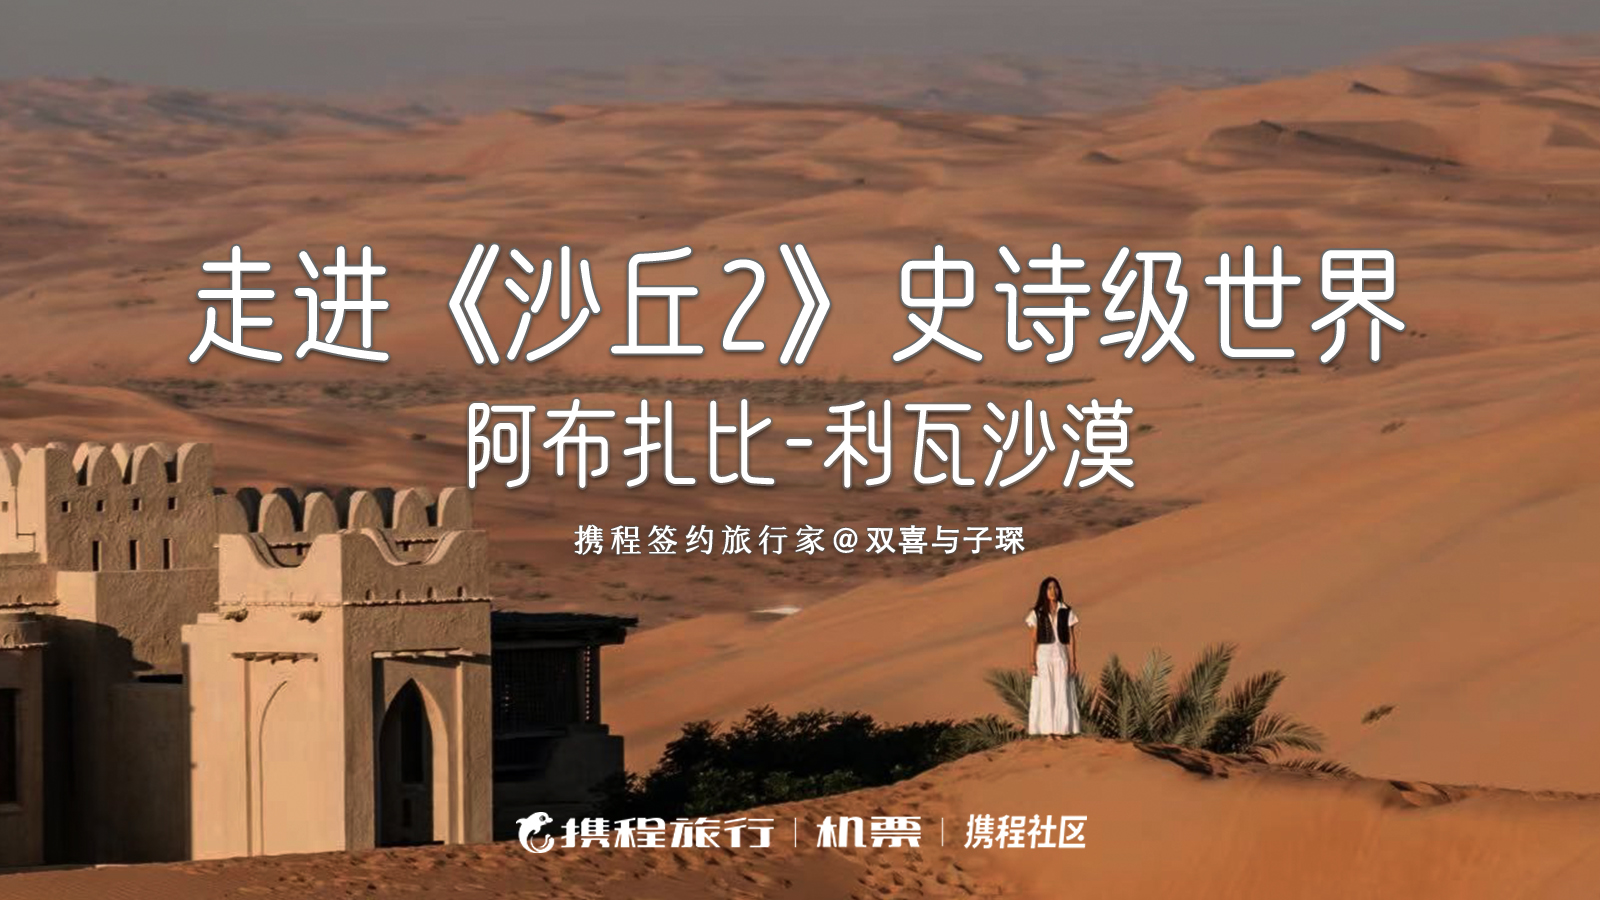 在利瓦沙漠复刻《沙丘2》绝美镜头